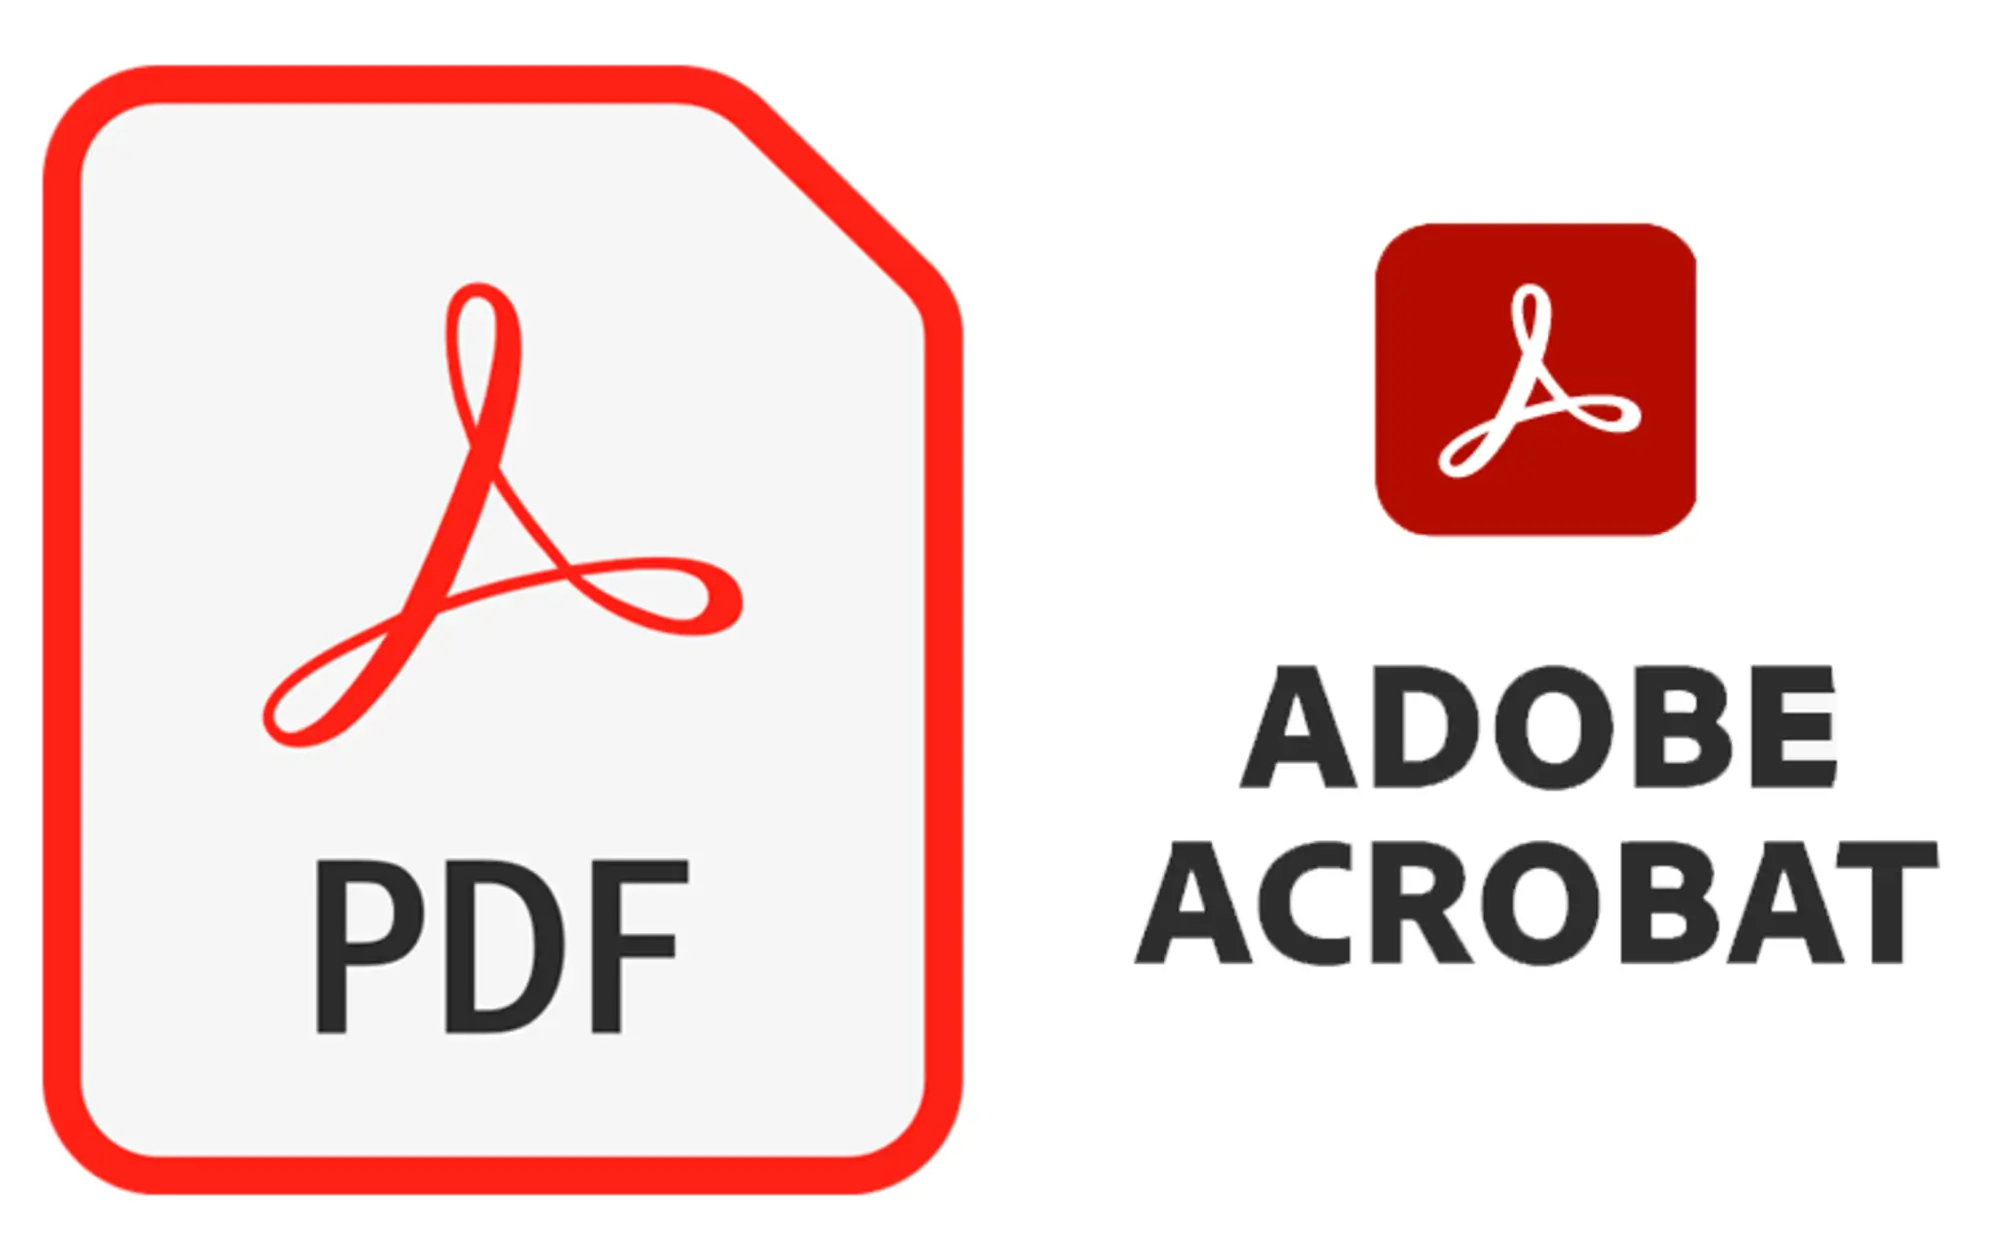 Adobe революціонізує роботу з PDF-документами завдяки новому штучному інтелекту